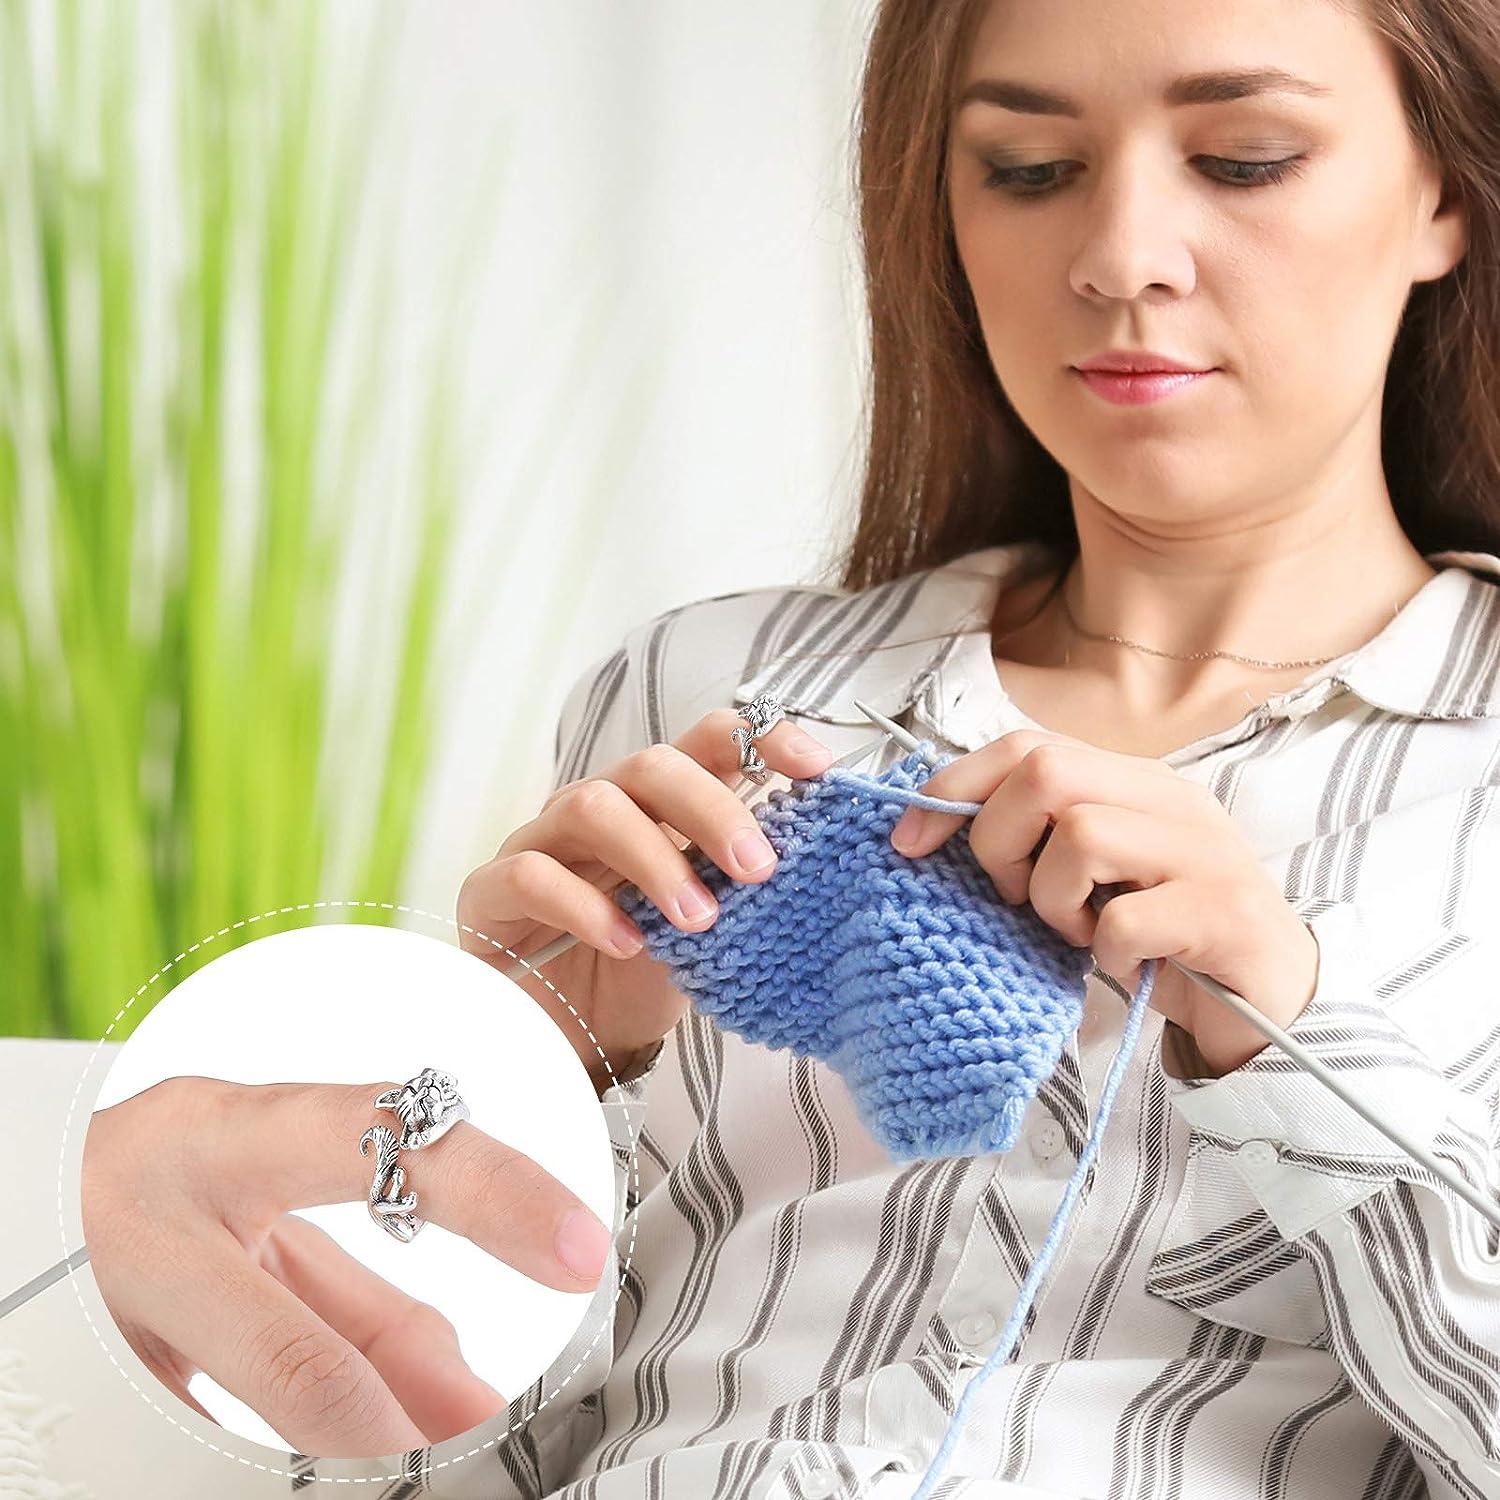 3pcs Adjustable Knitting Loop Ring- Finger Ring,crochet Finger Yarn  Holder,yarn Guide Finger Holder